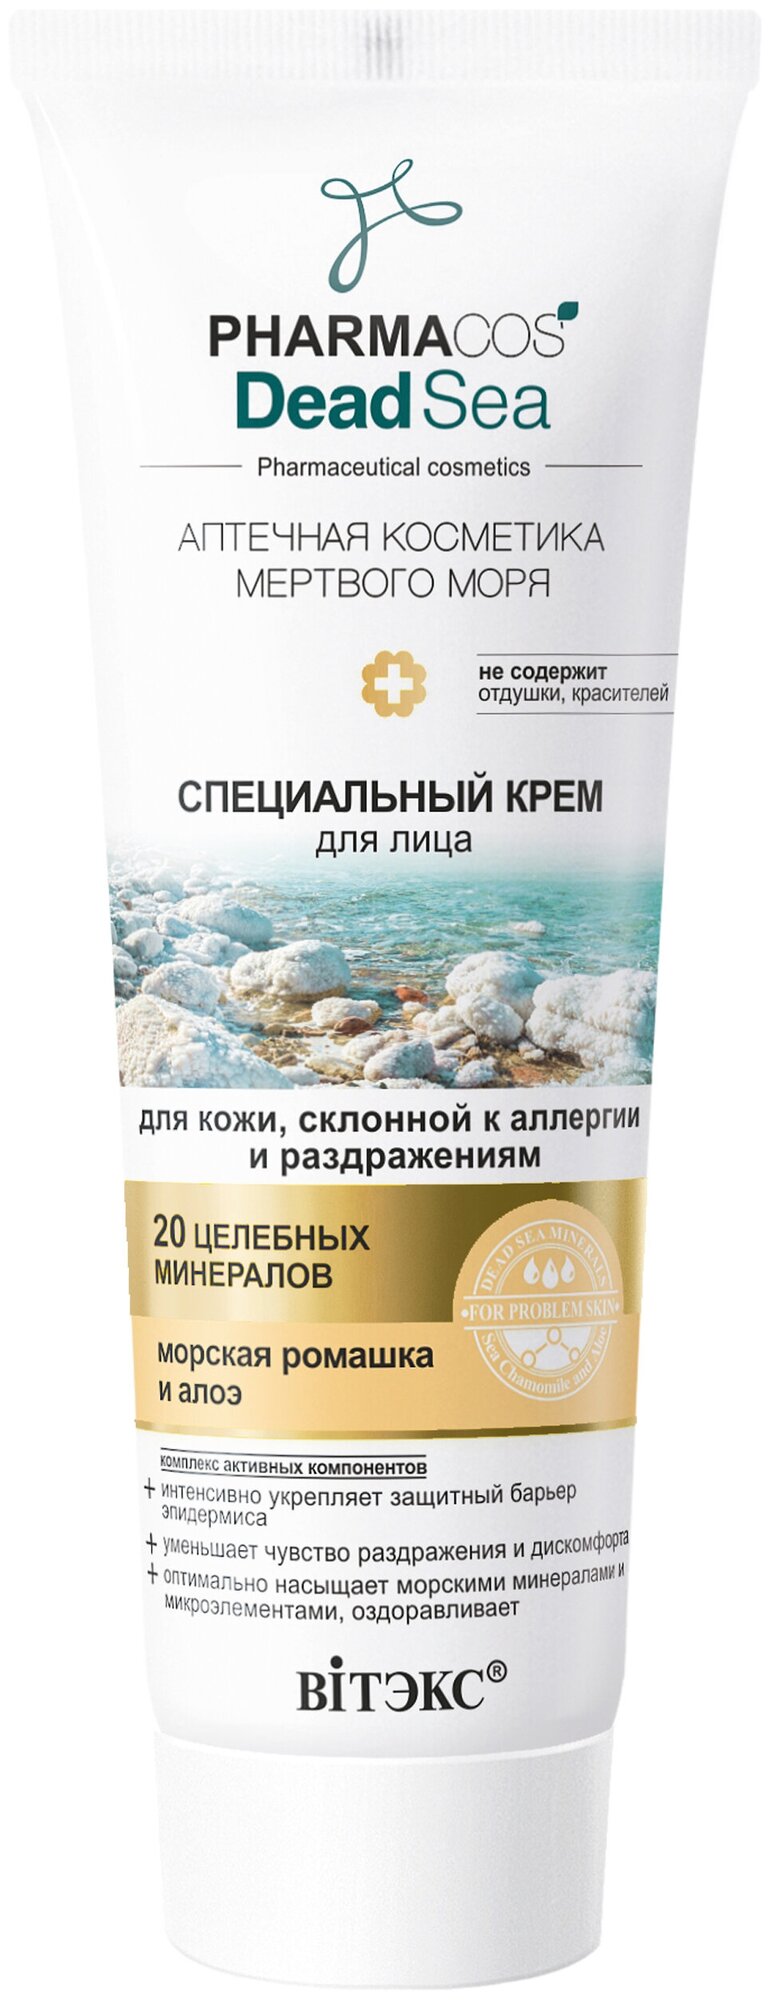 Витэкс Pharmacos Dead Sea Специальный крем для лица для кожи склонной к аллергии и раздражениям